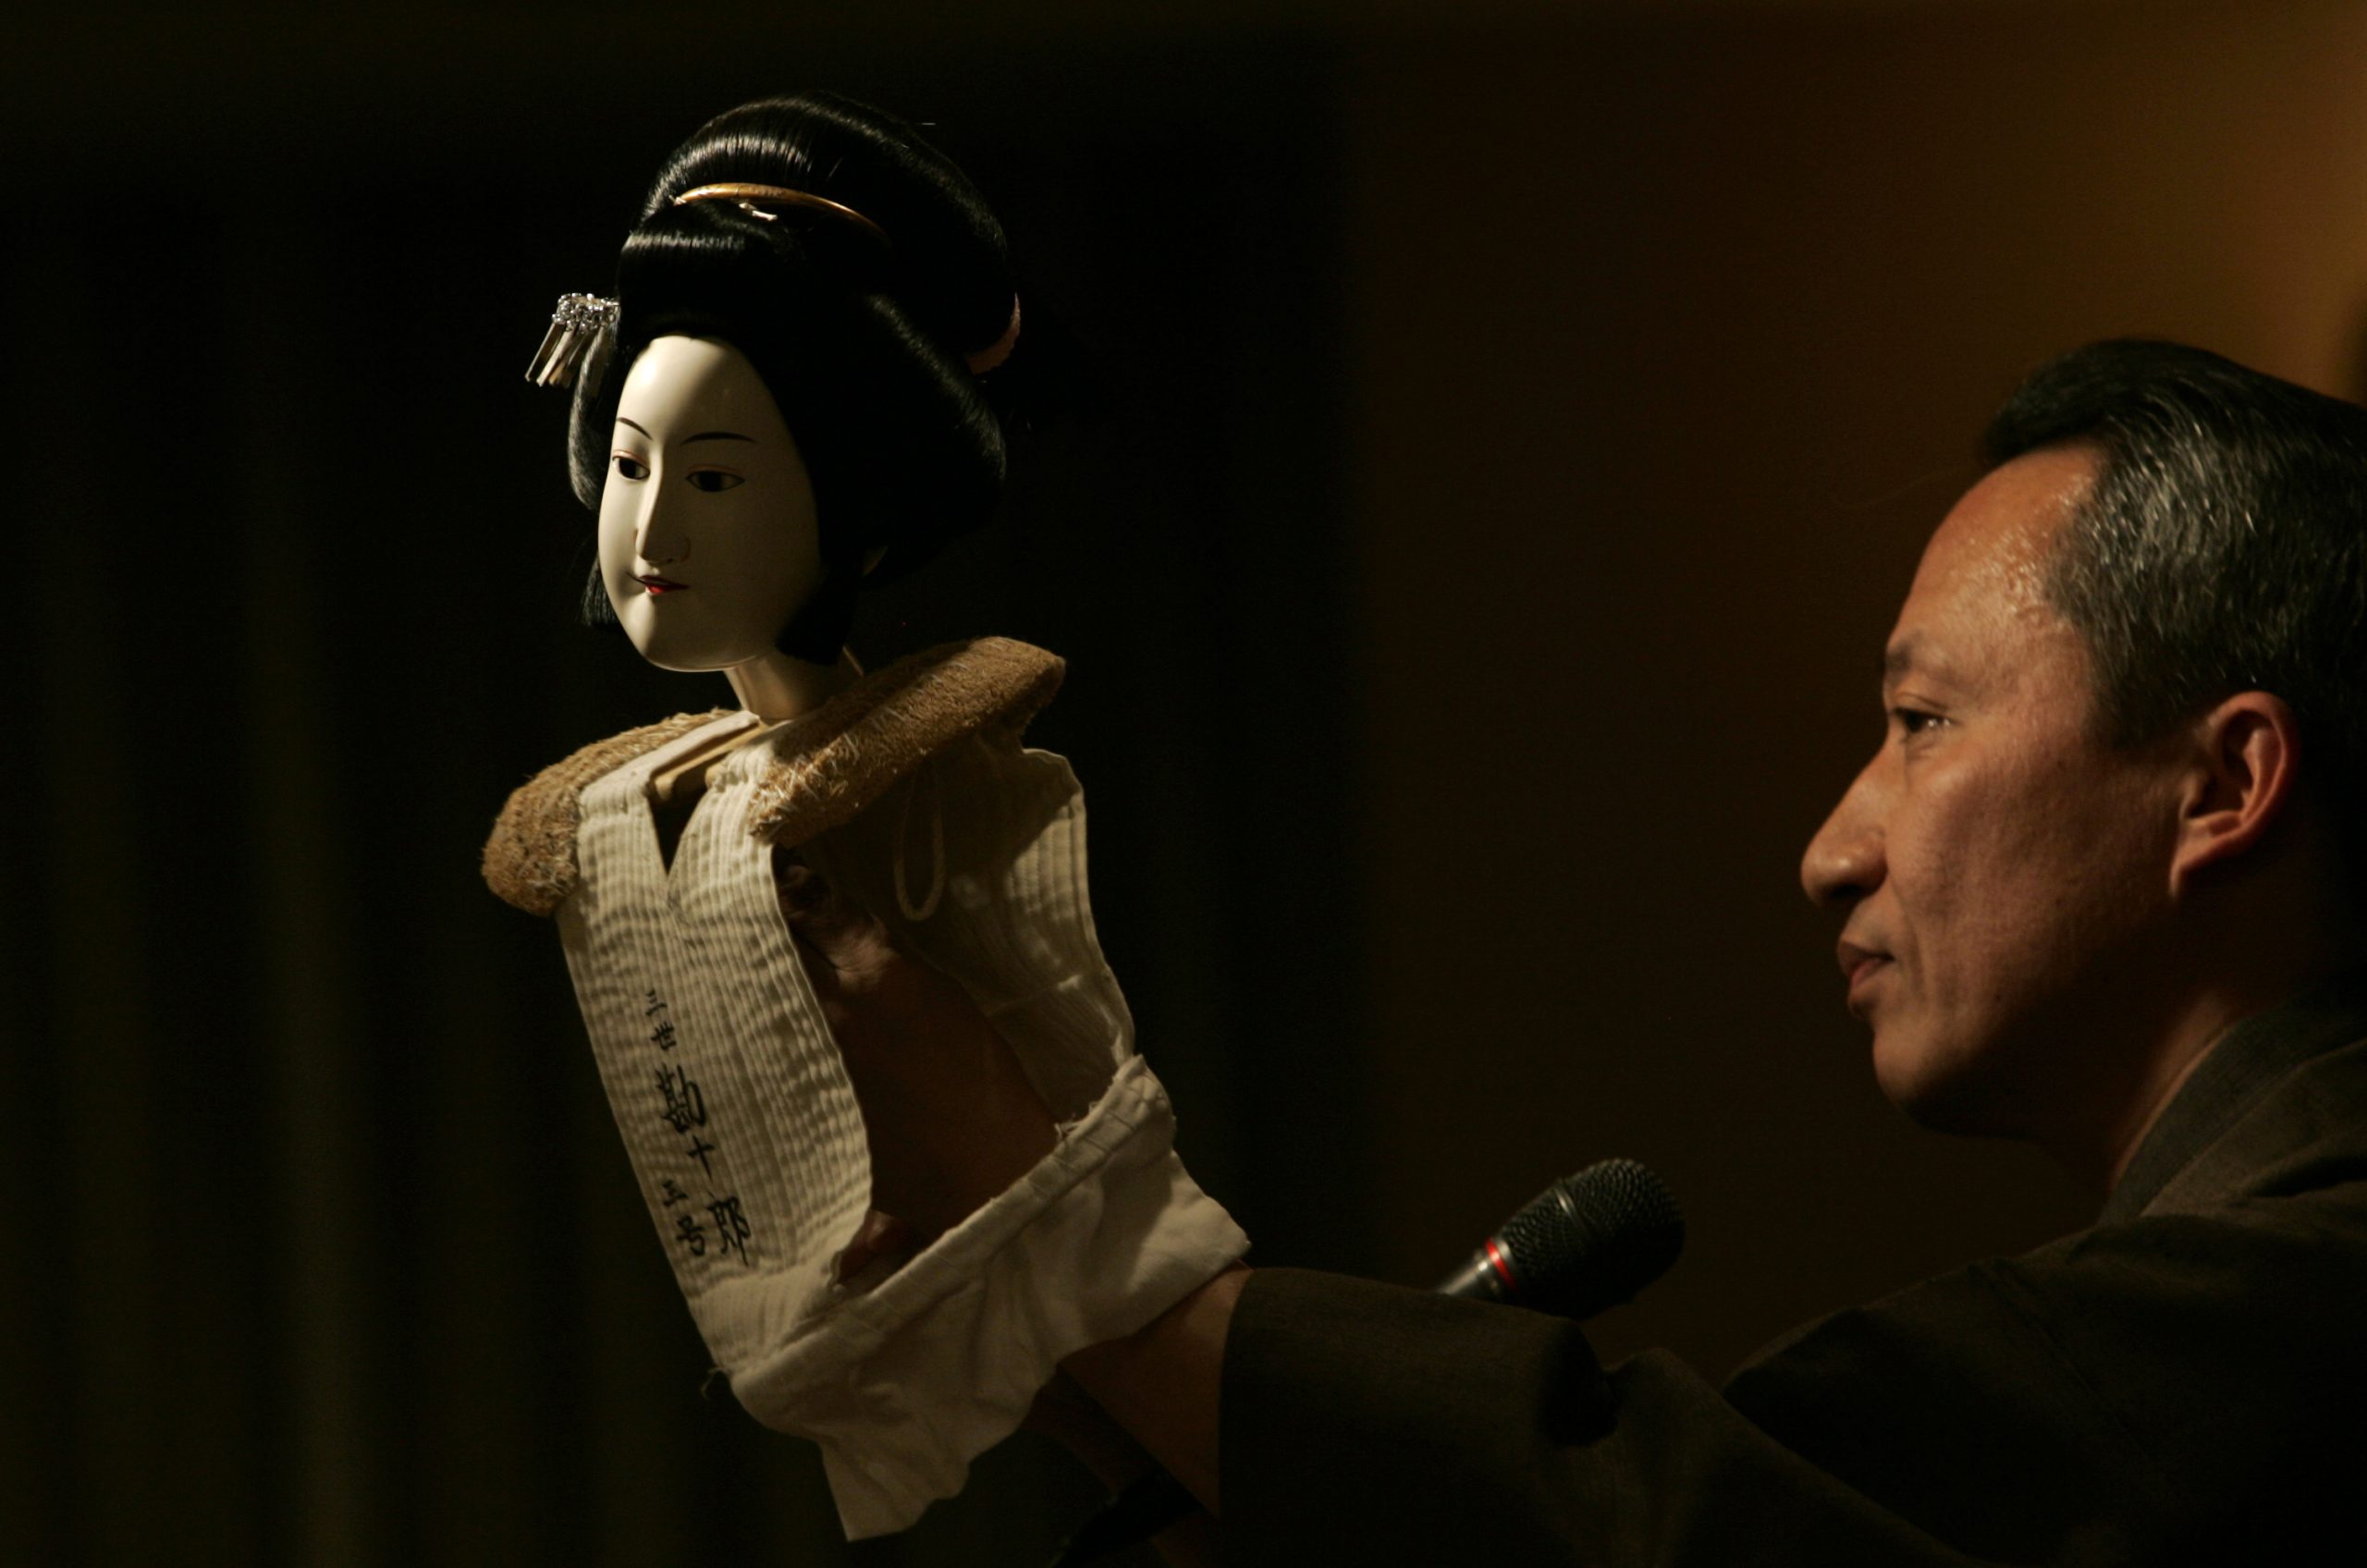 Una marioneta de Bunraku, teatro musical japonés del siglo XVII